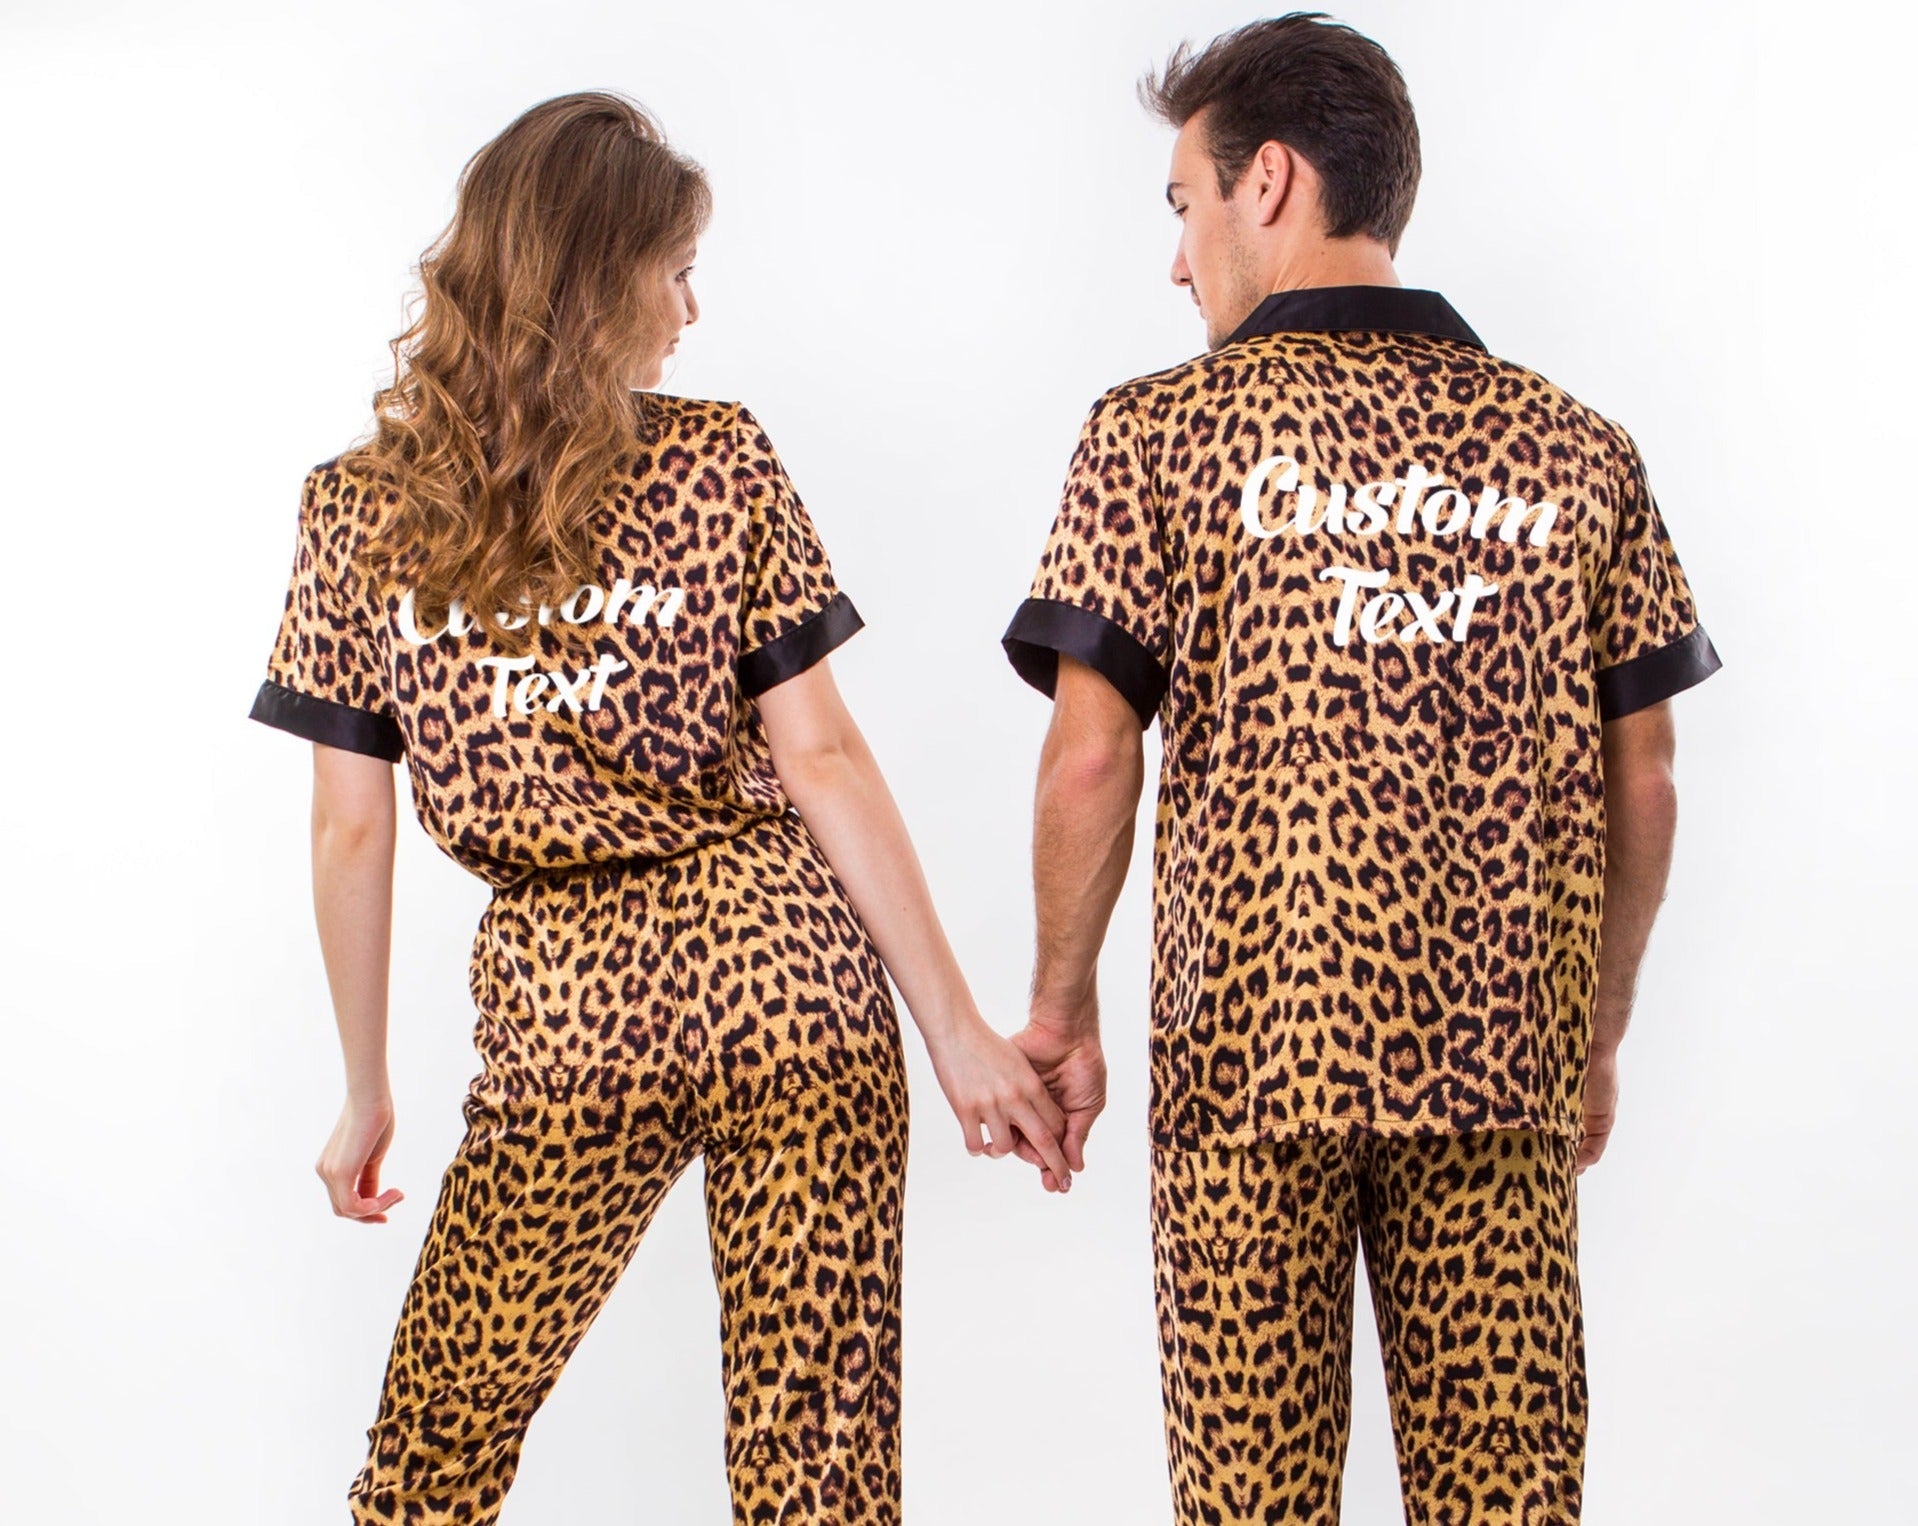 Gifts Pajamas Custom Couple, Anniversary Leopard Honeymoon Pjs, – Boutique Pajamas Pajamas for Satin Miami Gift, Xmas Set Wedding Sunny gift